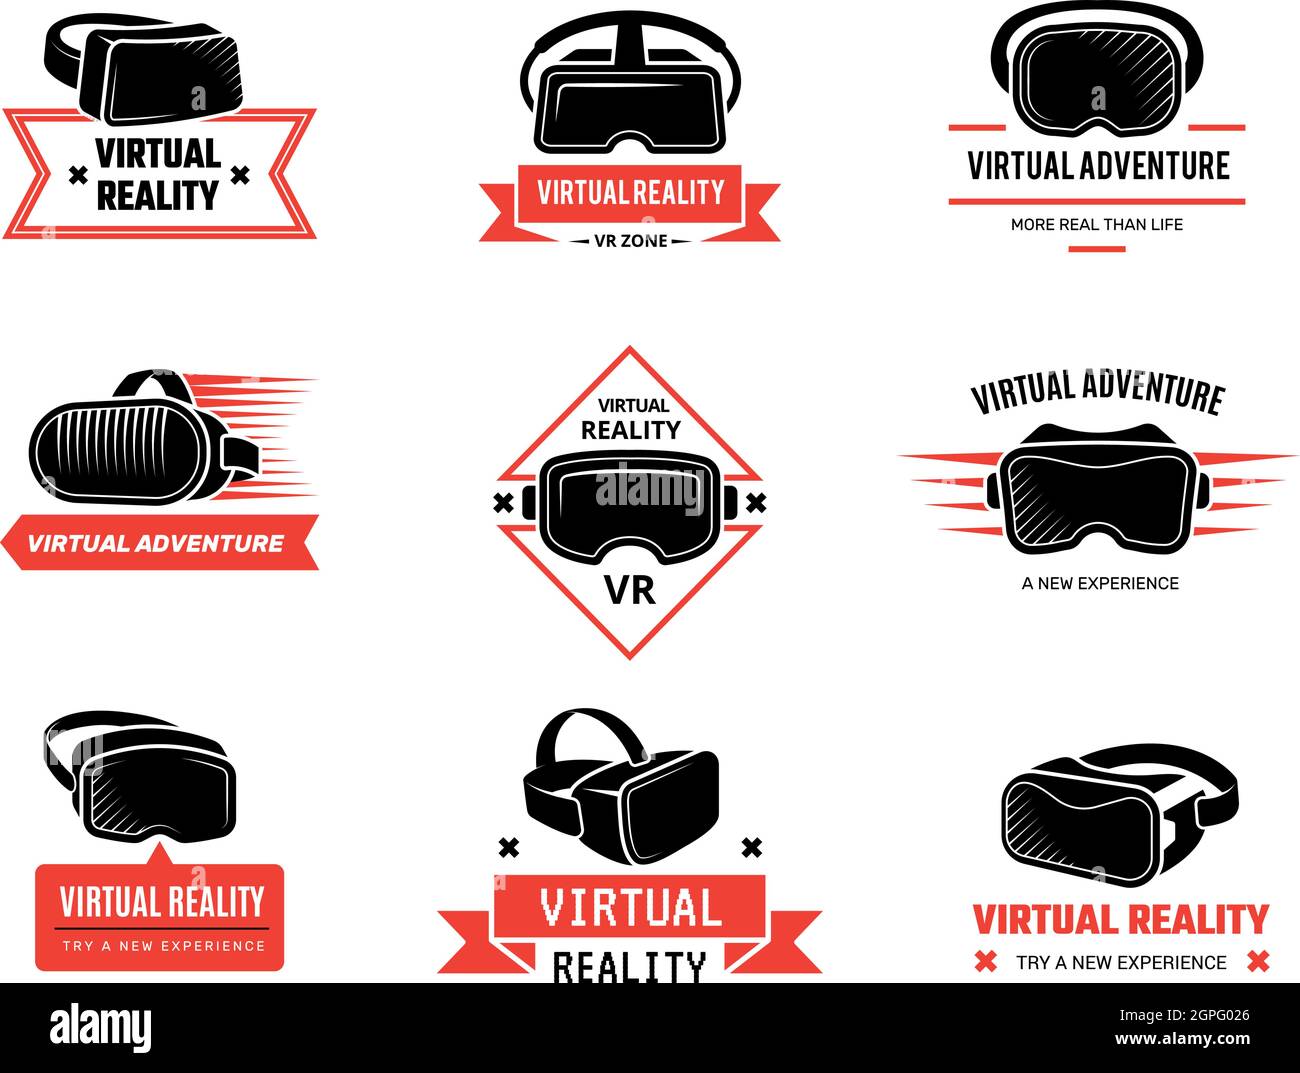 Logo du casque VR. Des badges pour les gamers les jeux vidéo de réalité virtuelle avec micro-casque et micro-casque Illustration de Vecteur